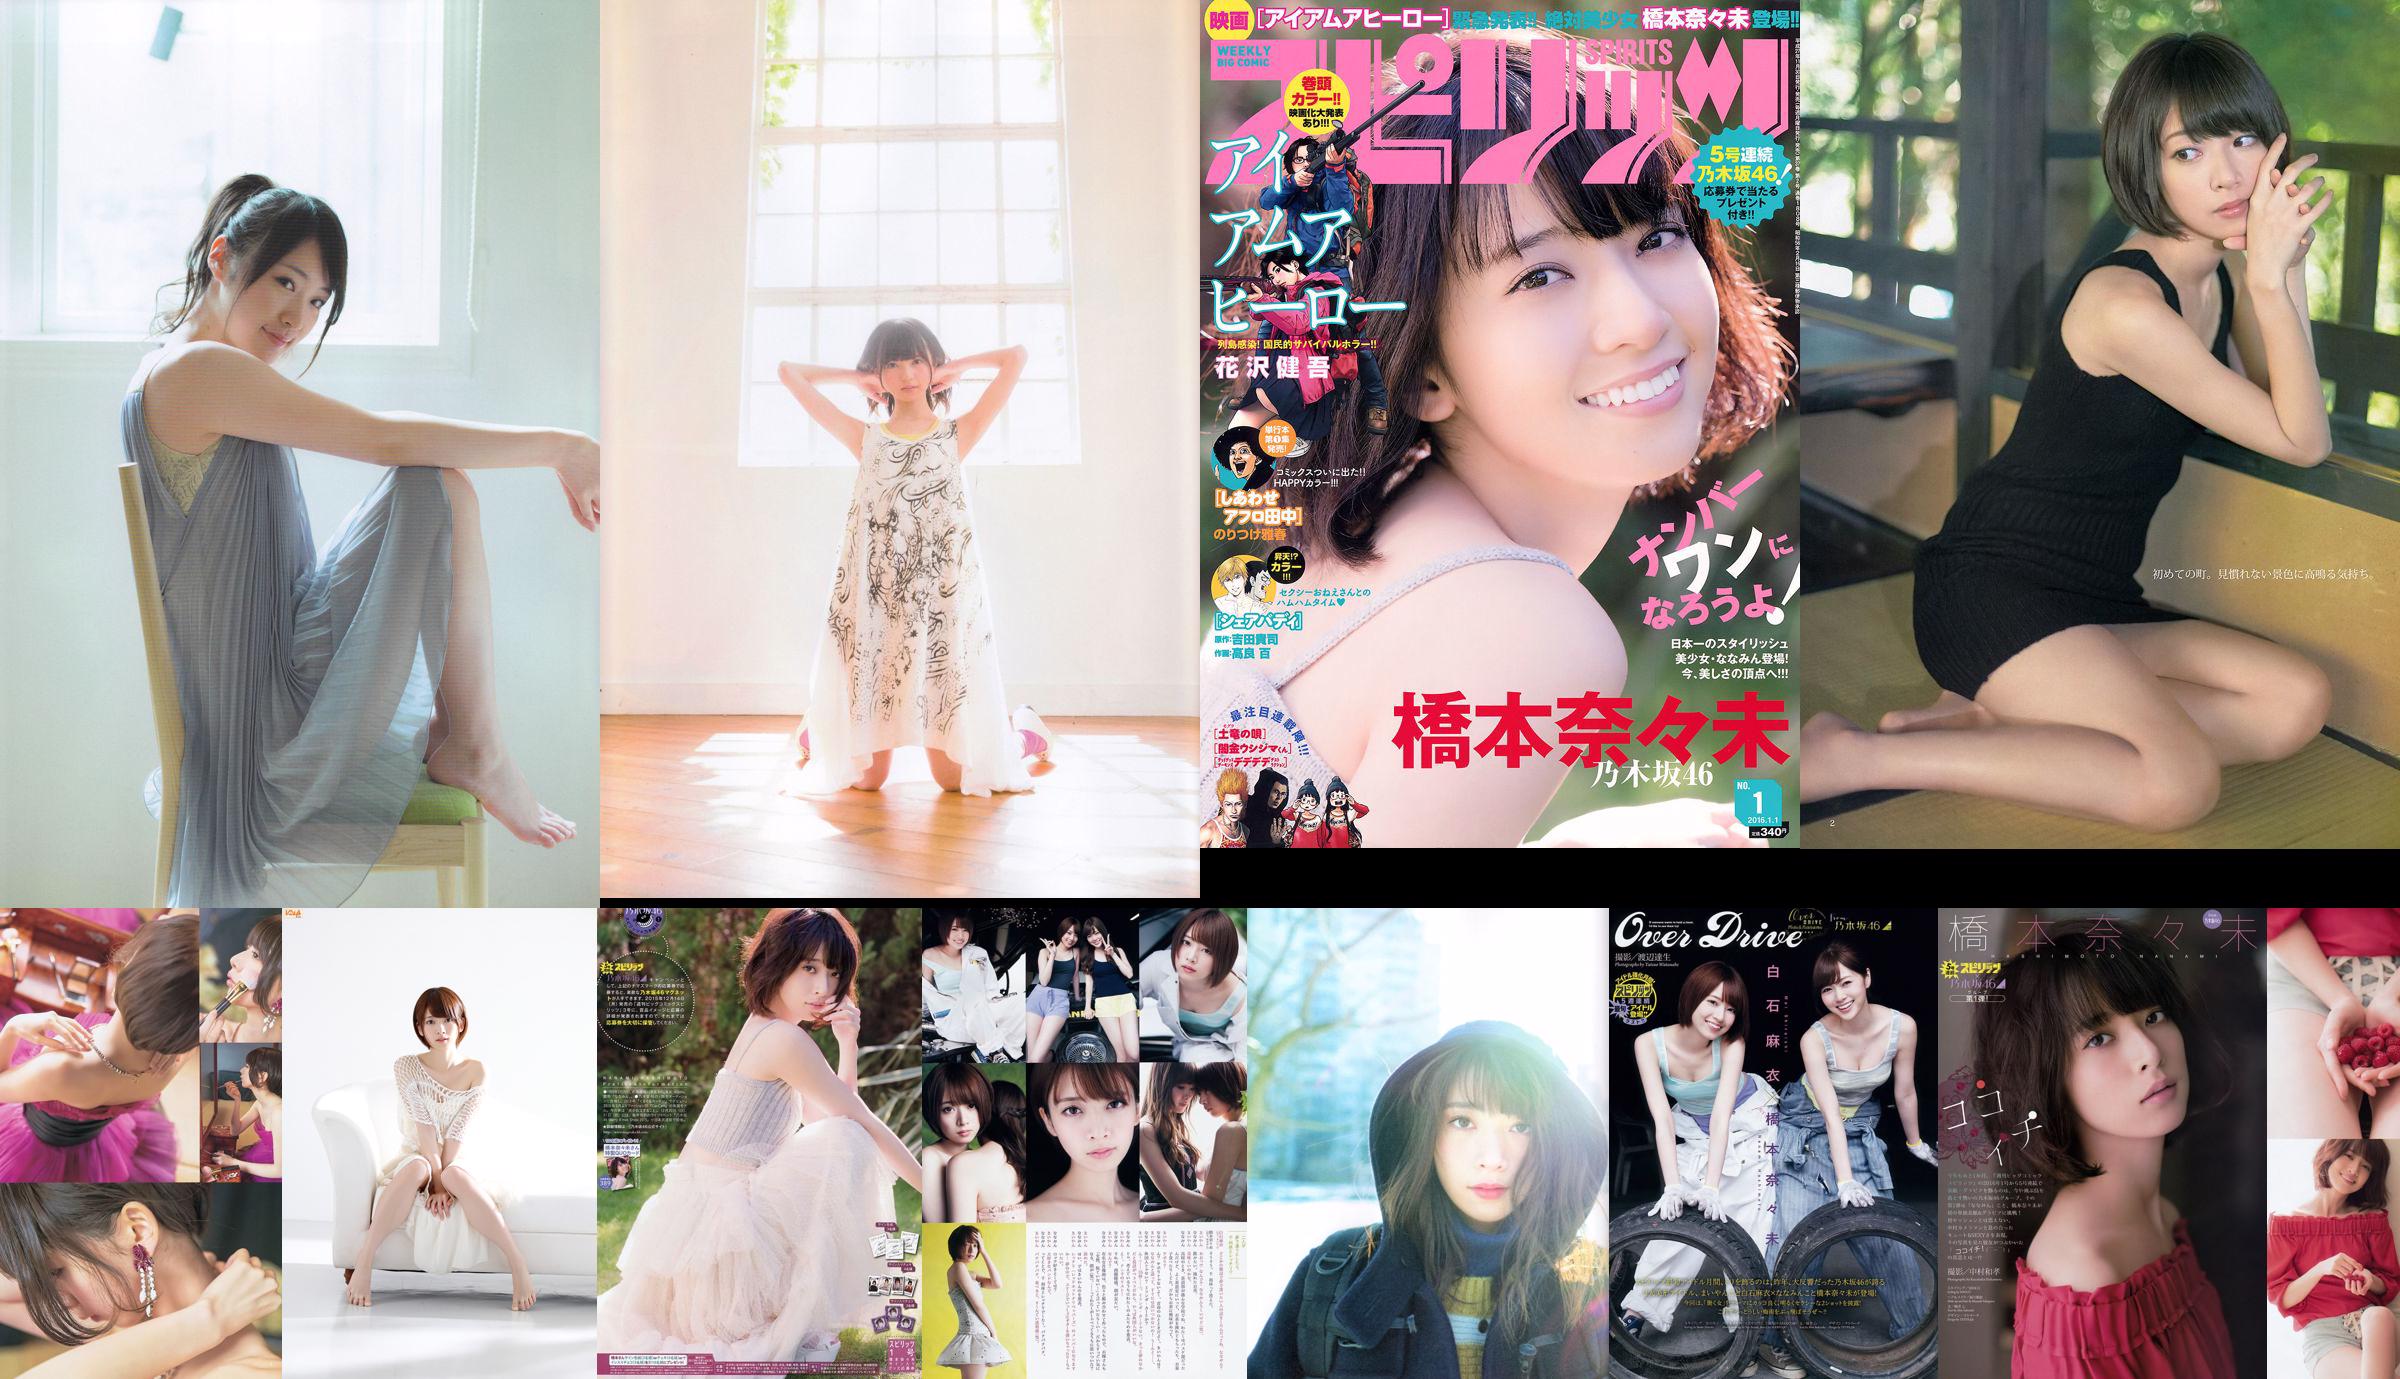 Nanami Hashimoto (membre de Nogizaka 46) [Bomb.TV] Juin 2013 No.04b915 Page 1